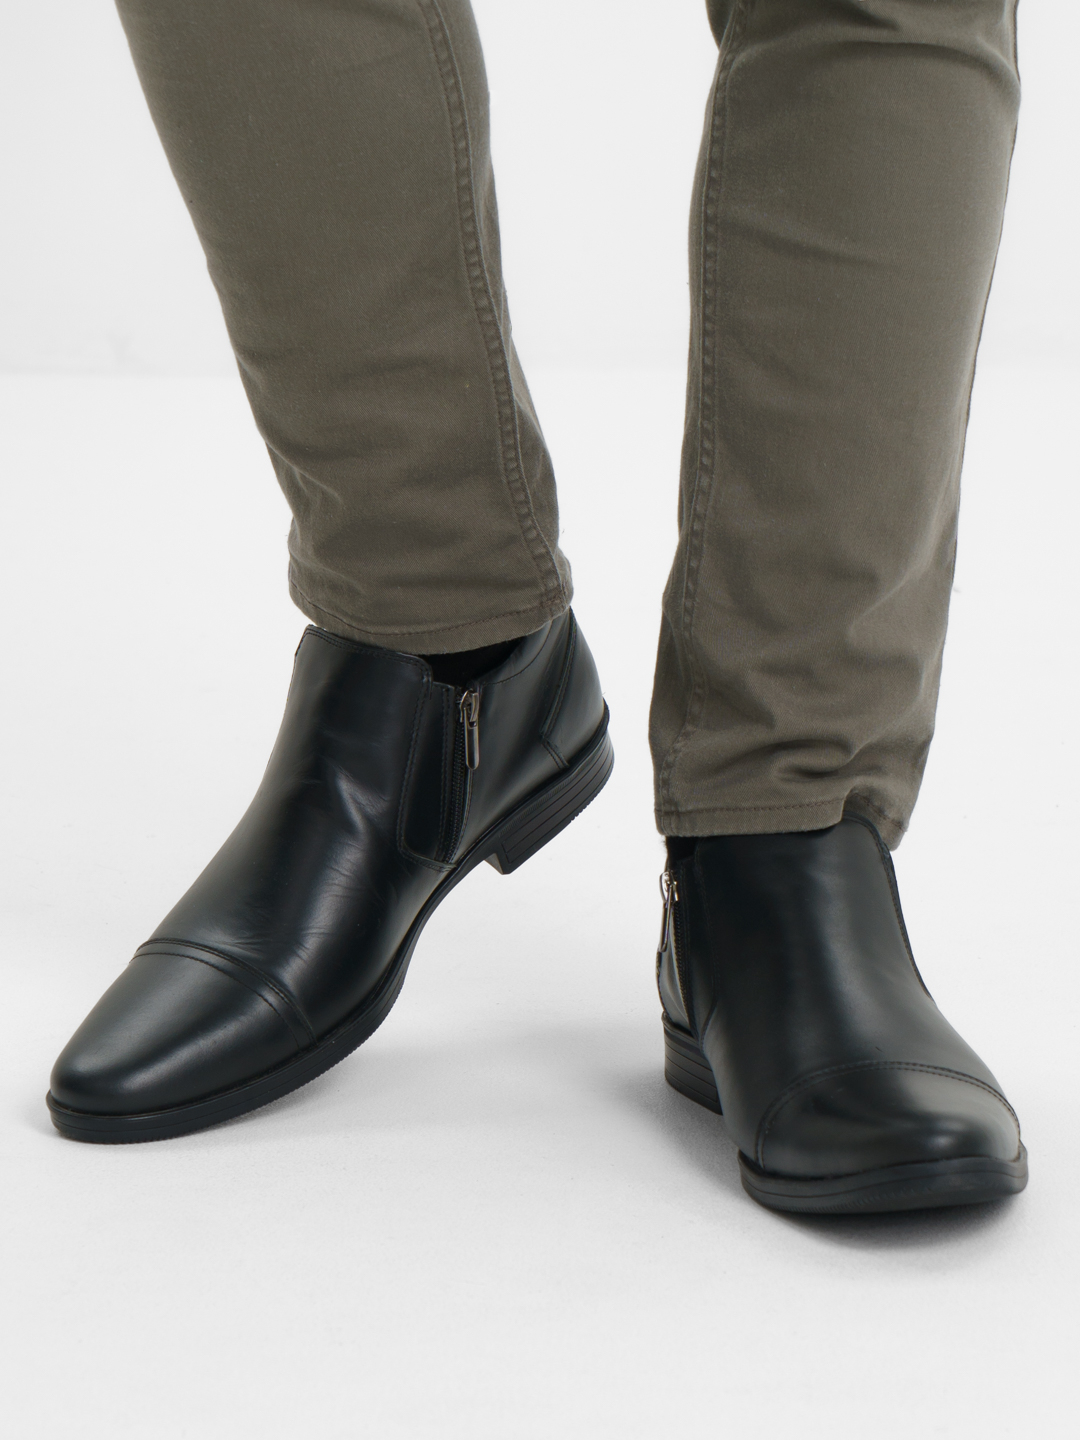 Ботинки мужские, демисезонные, из натуральной кожи, черные, ручная работакупить по цене 3500 ₽ в интернет-магазине KazanExpress